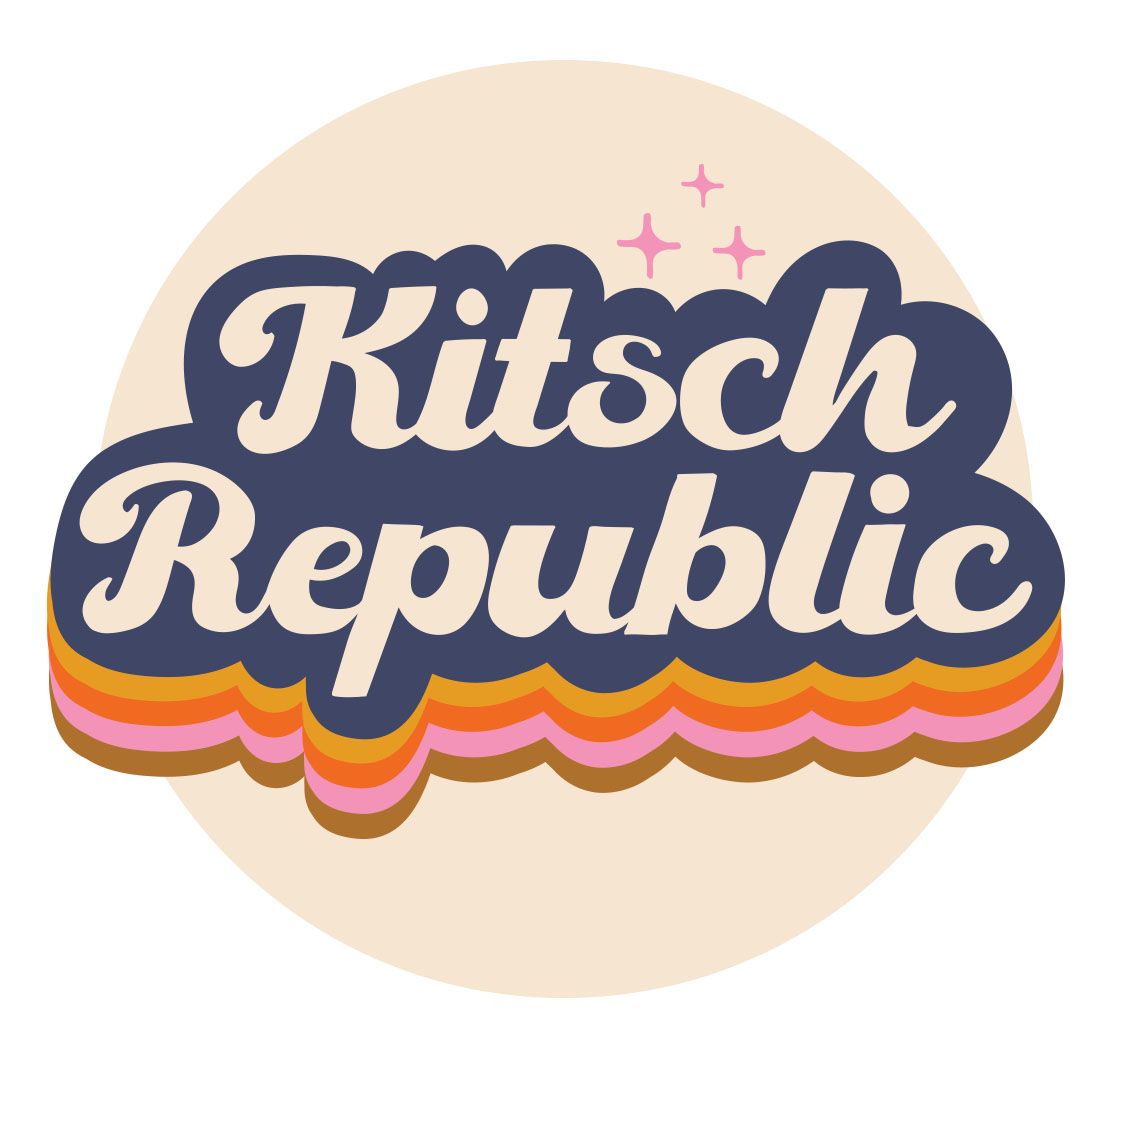 Kitsch Republic